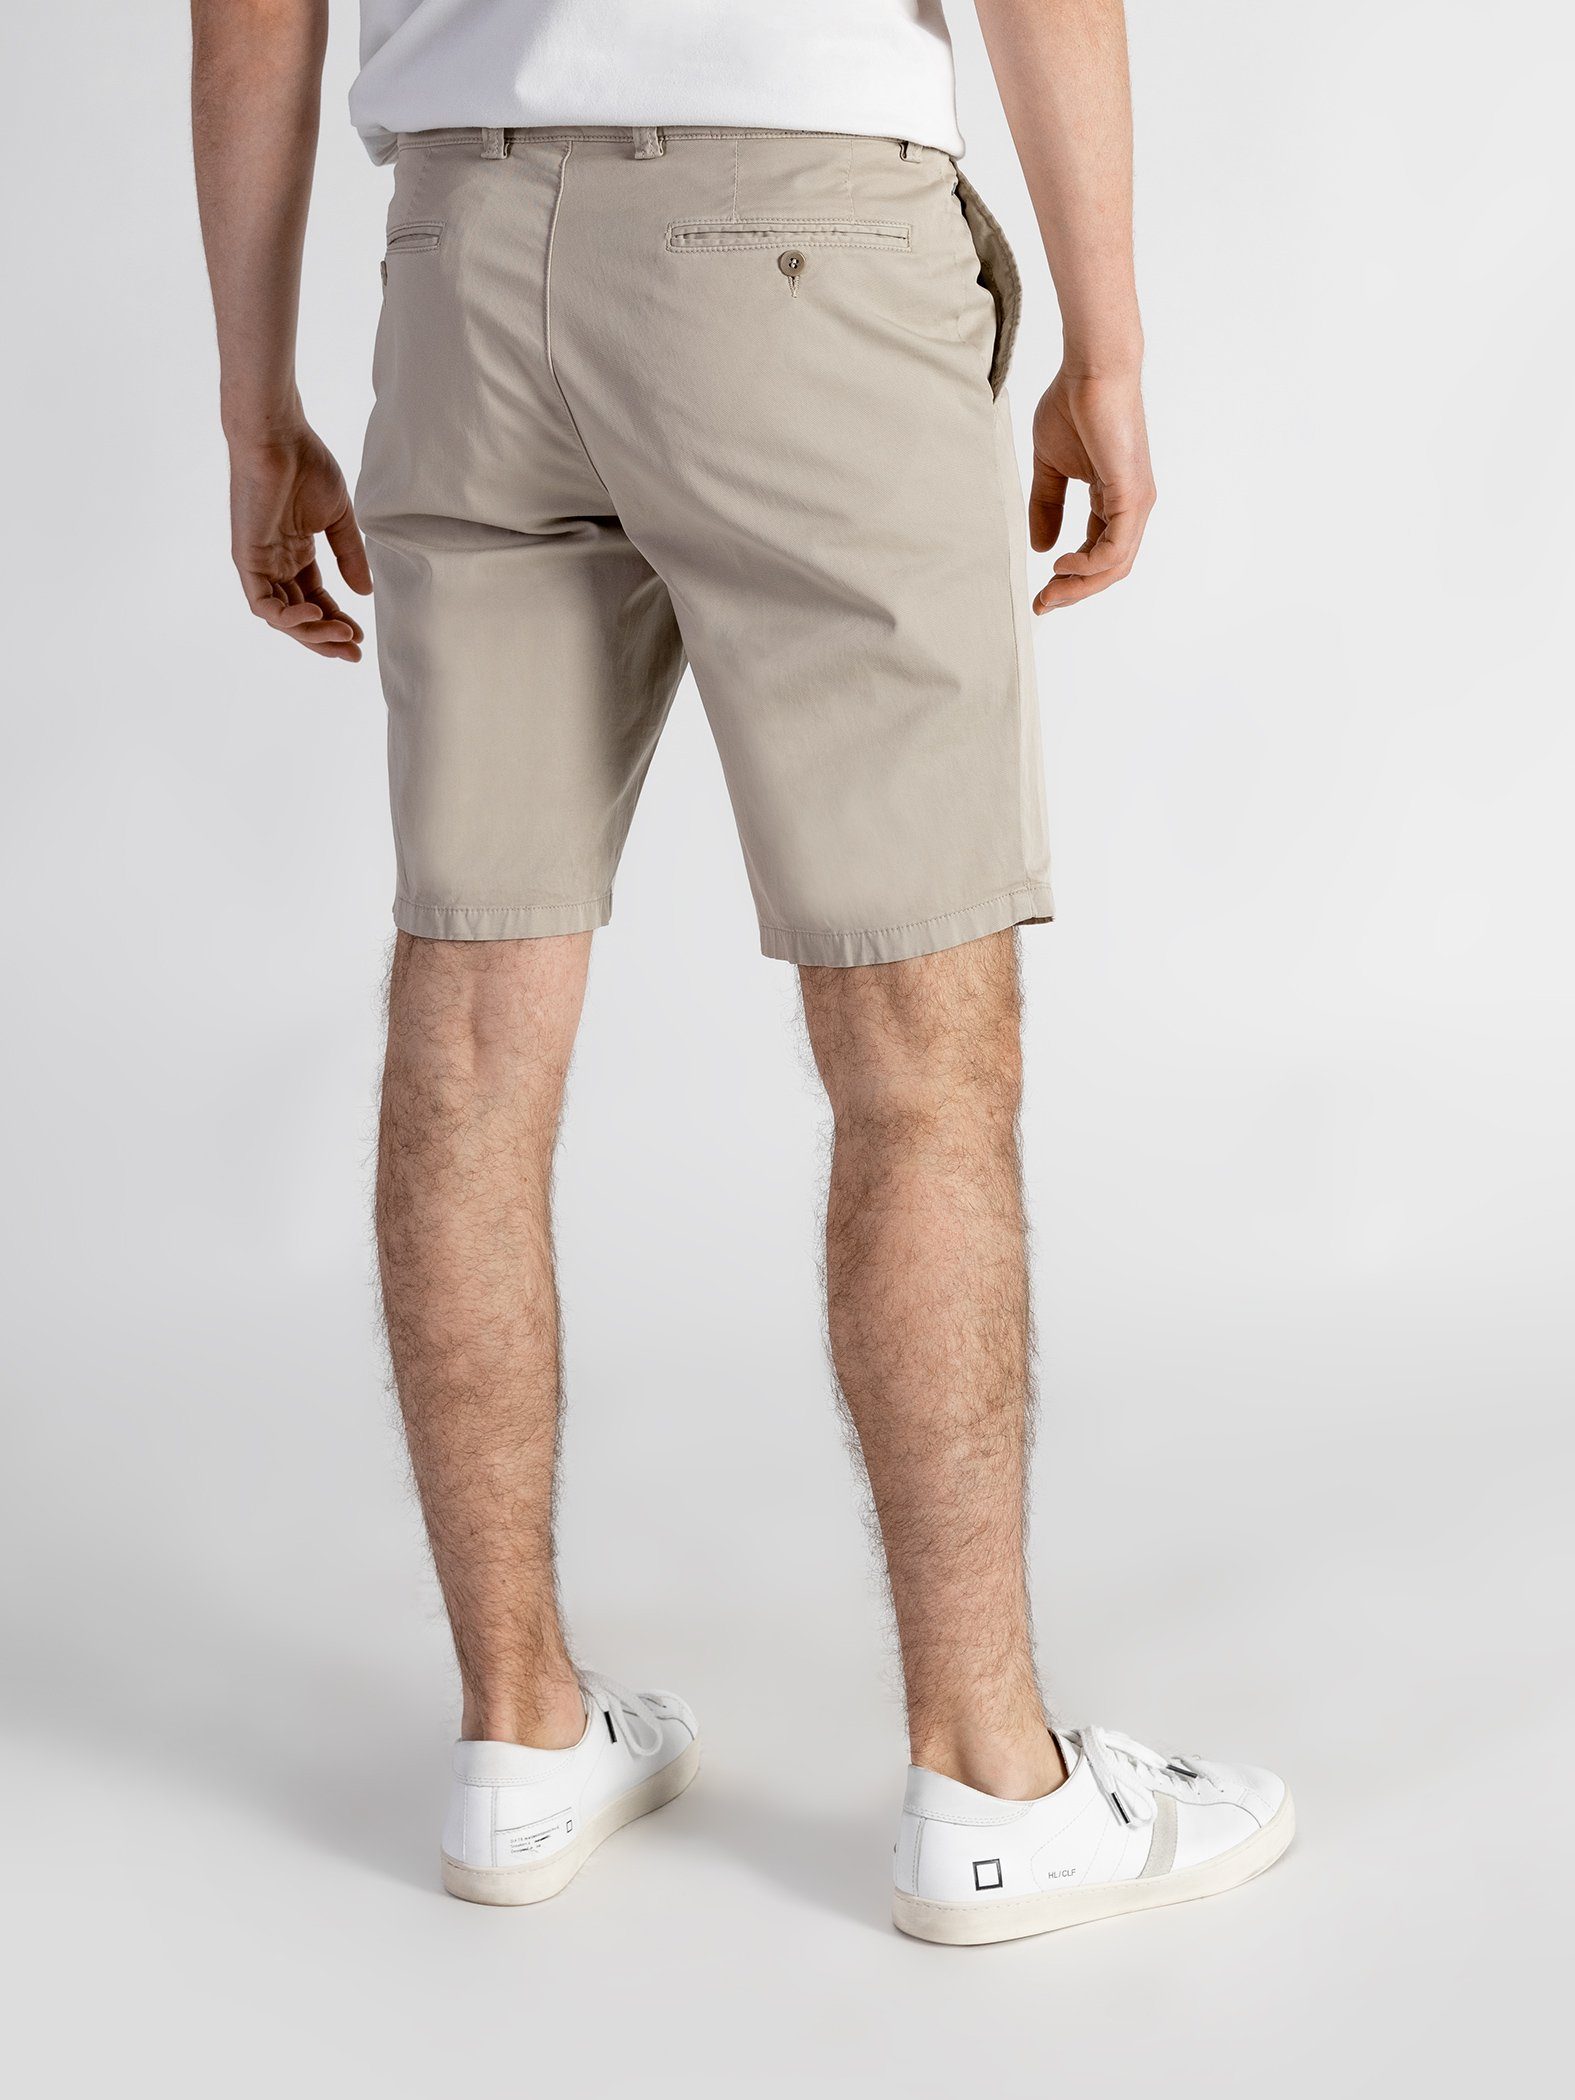 TwoMates Shorts Shorts sandbeige Bund, GOTS-zertifiziert Farbauswahl, elastischem mit